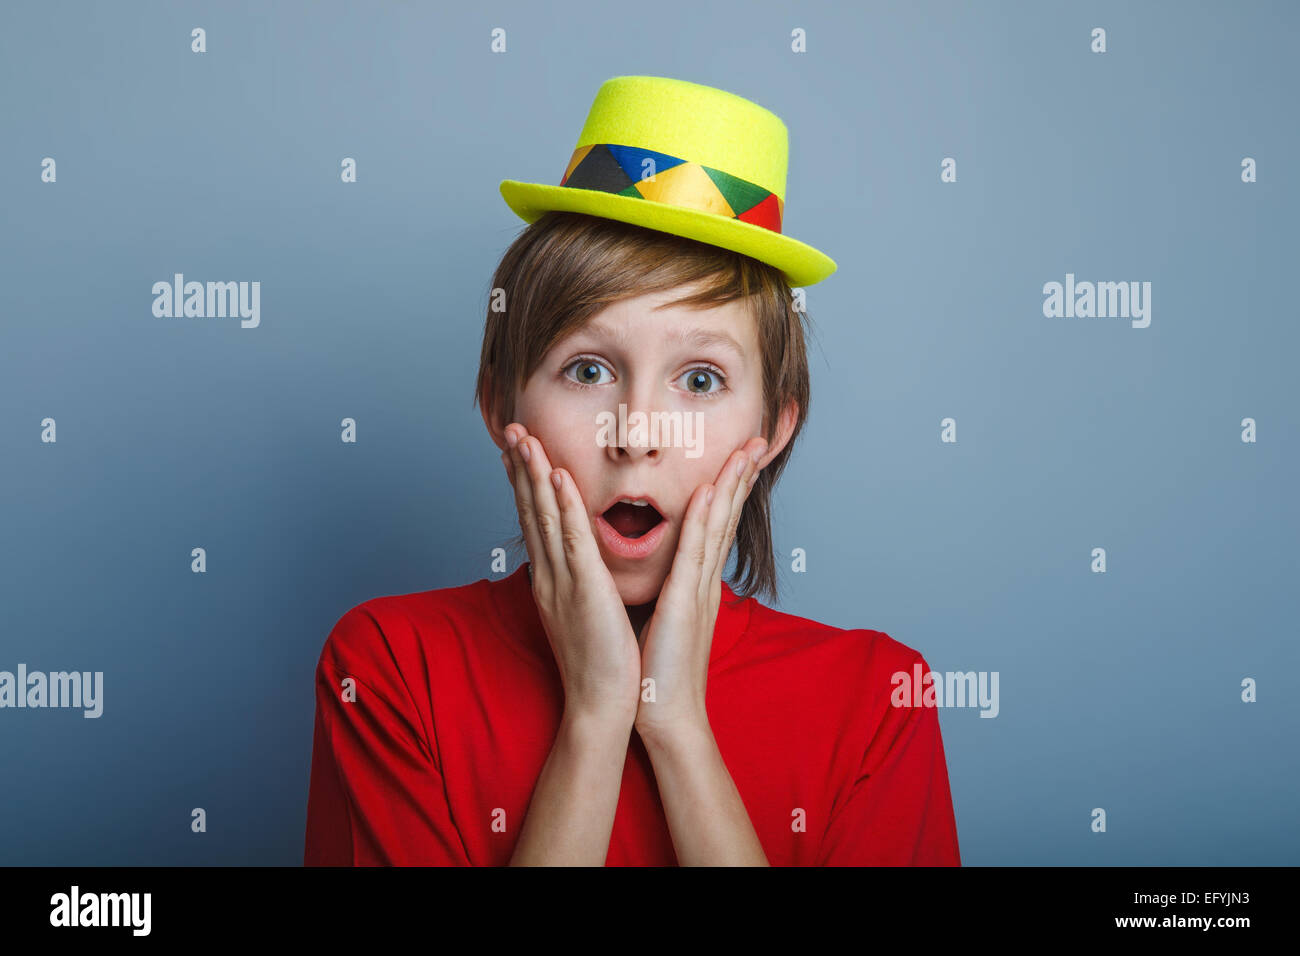 L'adolescent garçon apparition dans un chandail rouge et jaune hat p Banque D'Images